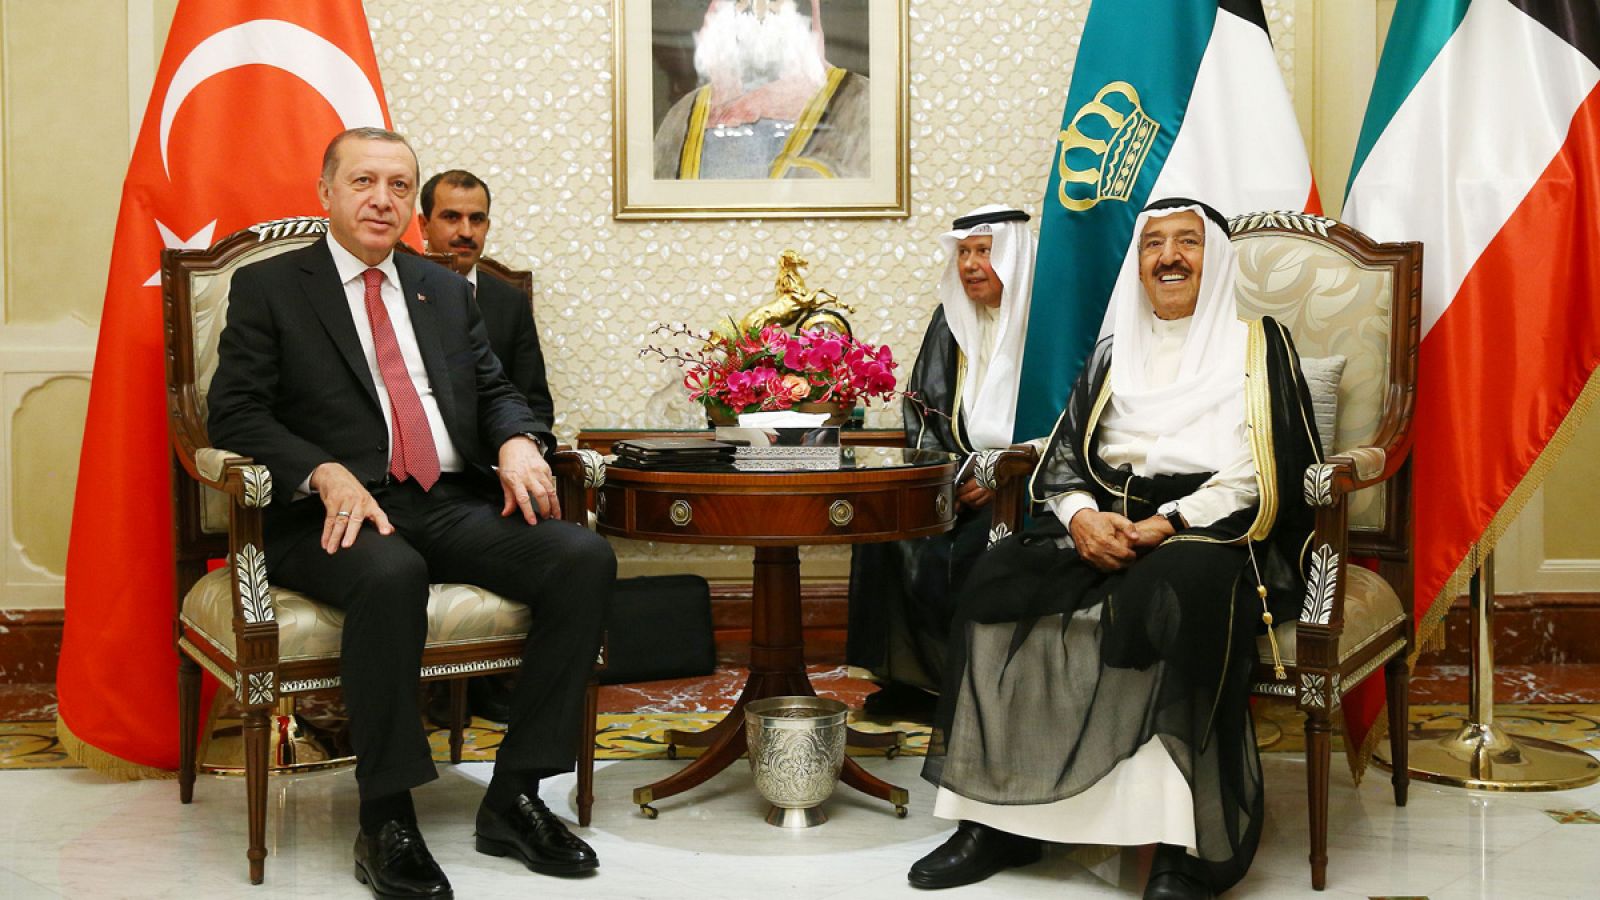 El presidente de Turquía, Recep Tayyip Erdogan, junto al emir de Kuwait, Sabah al Ahmed al Sabah